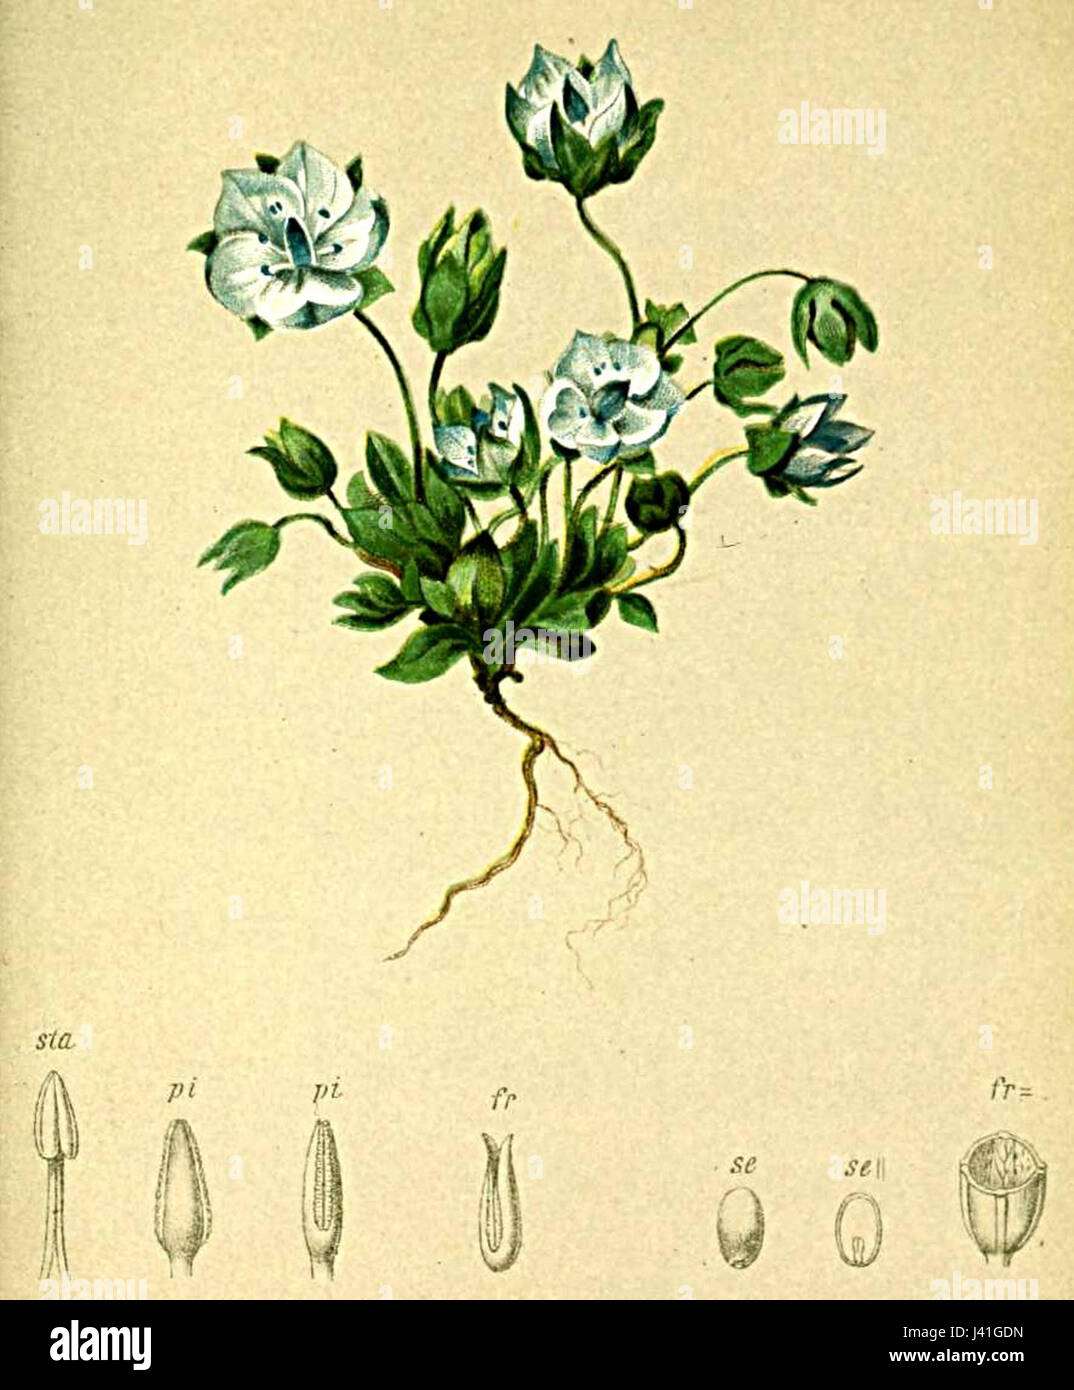 Lomatogonium carinthiacum Atlas Alpenflora Stock Photo